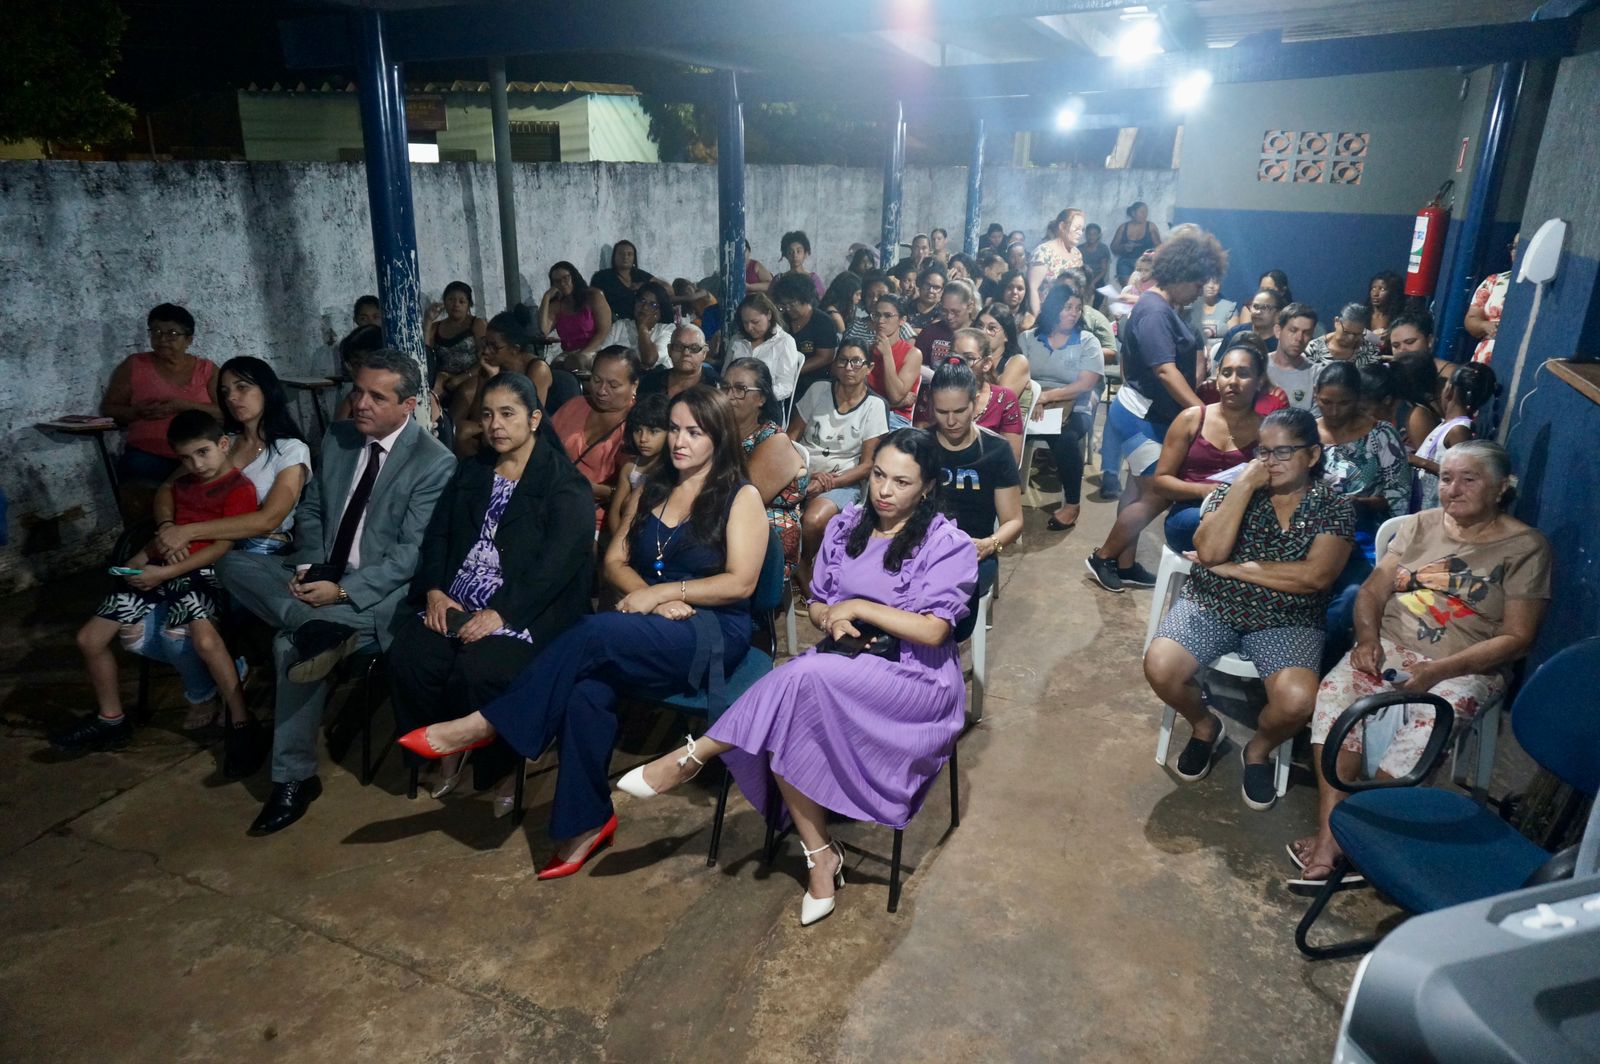 Em comemoração ao Dia da Mulher, federação realiza aulão de defesa pessoal  - Capital - Campo Grande News